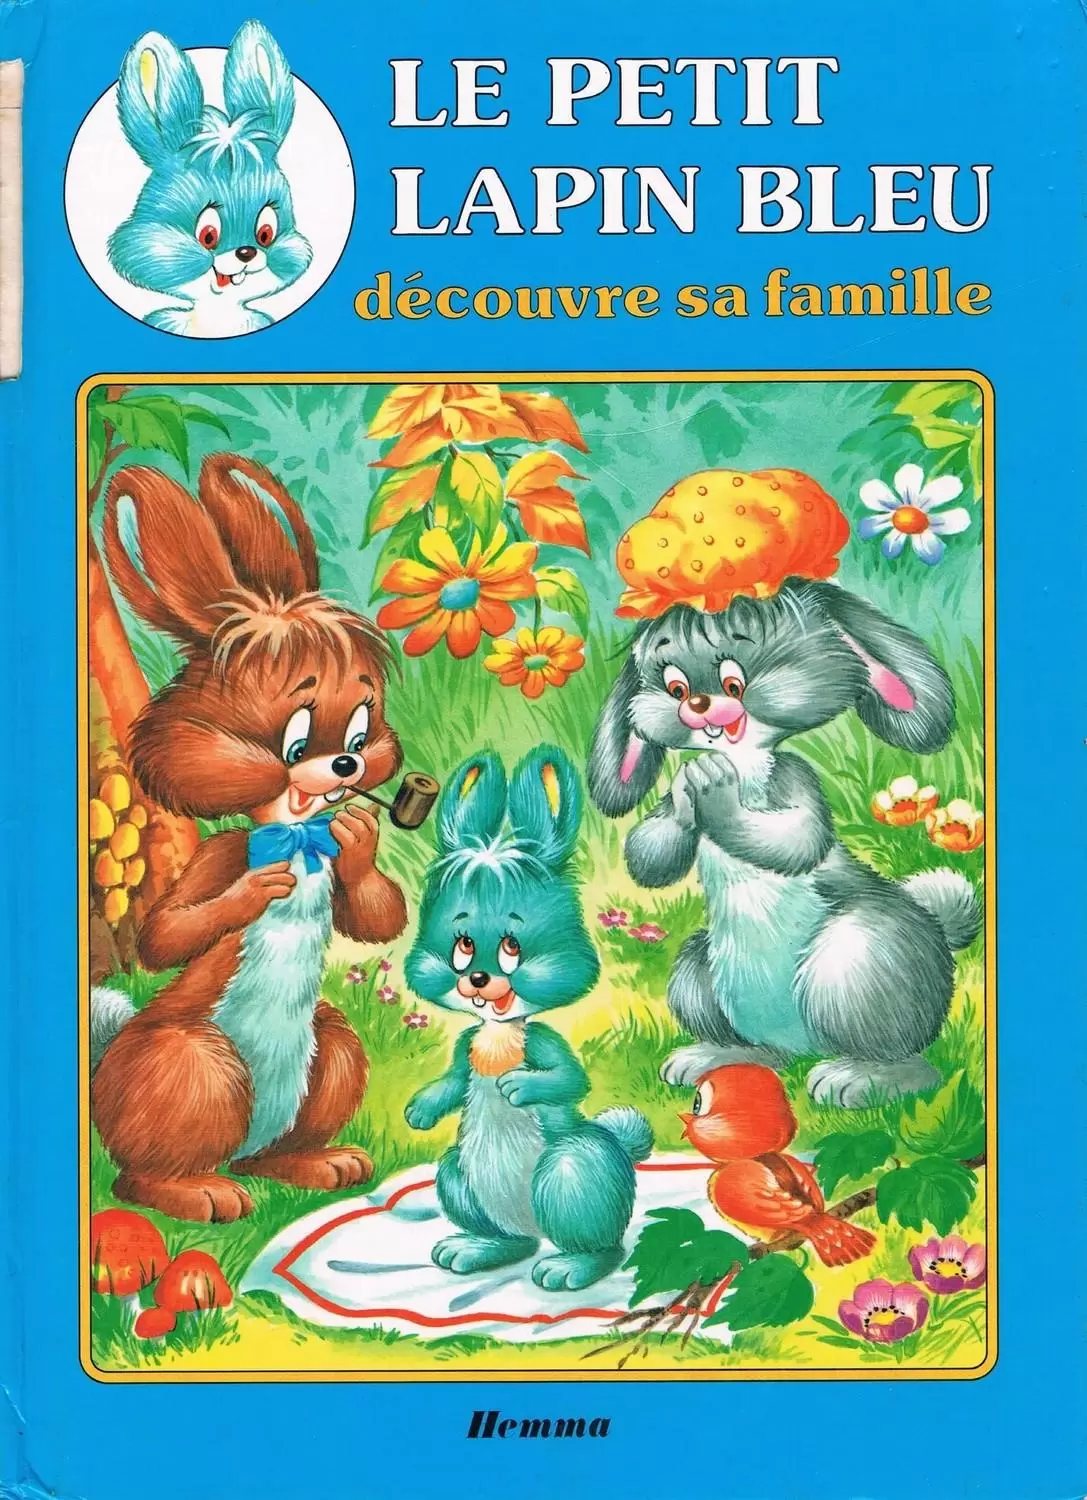 Le Petit Lapin Bleu - Le petit lapin bleu découvre sa famille